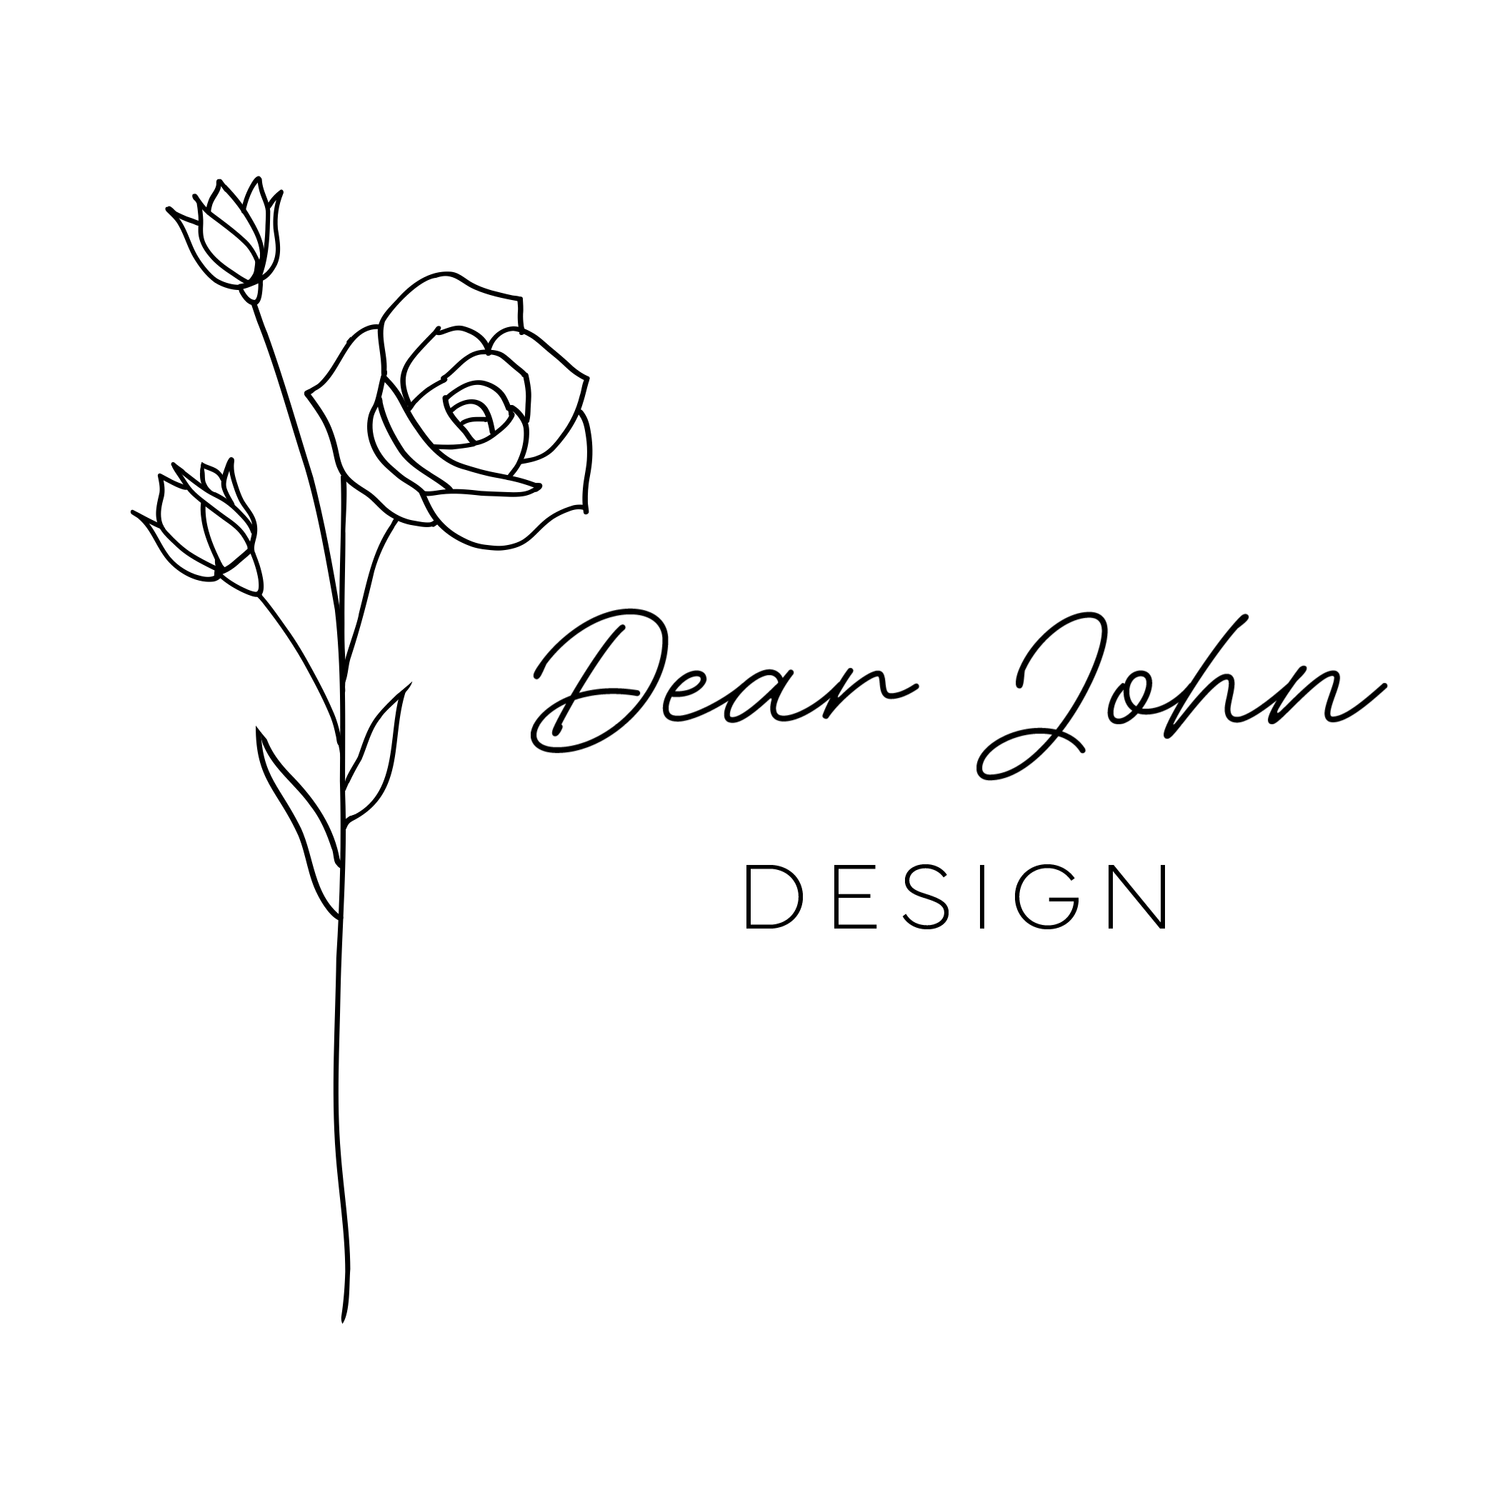 Dear John Design